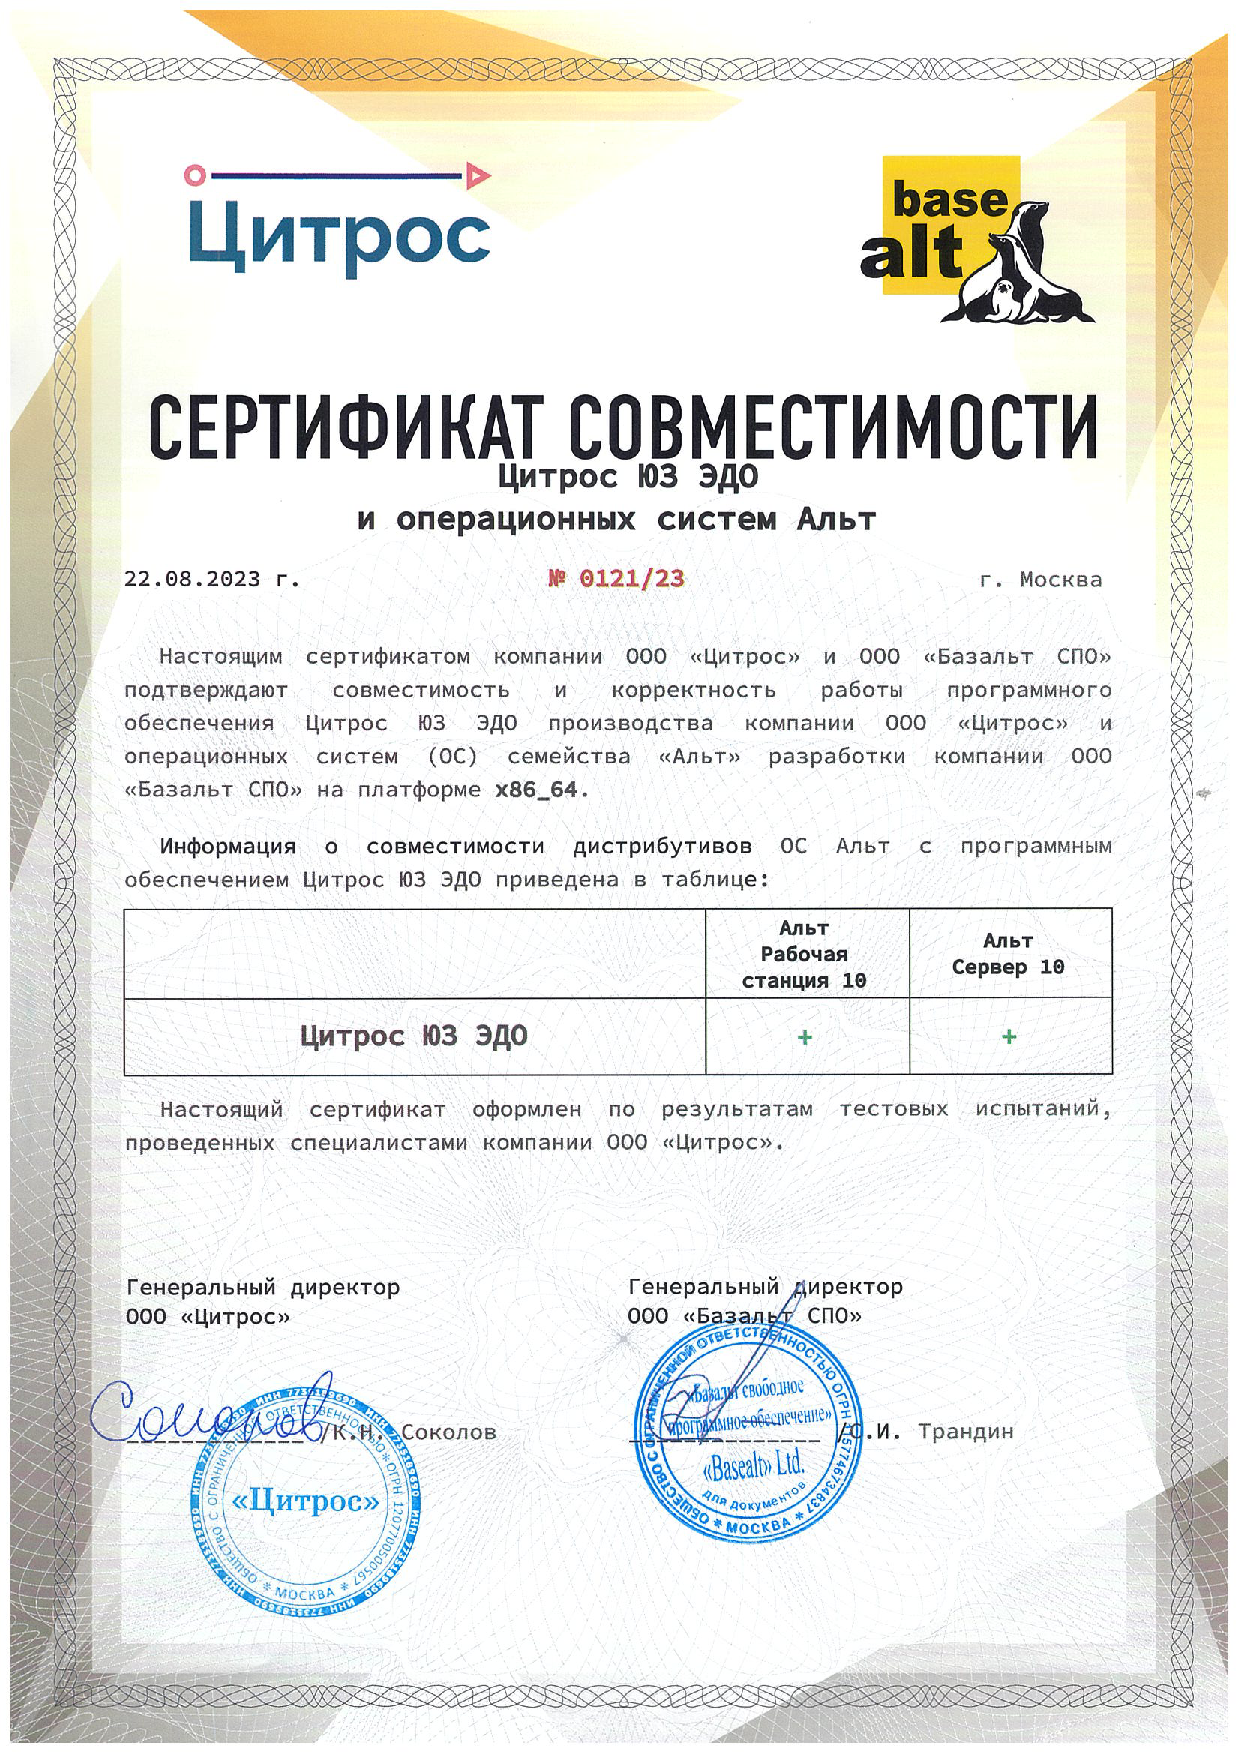 Сертификат совместимости «Цитрос ЮЗ ЭДО» и ОС «Альт» 